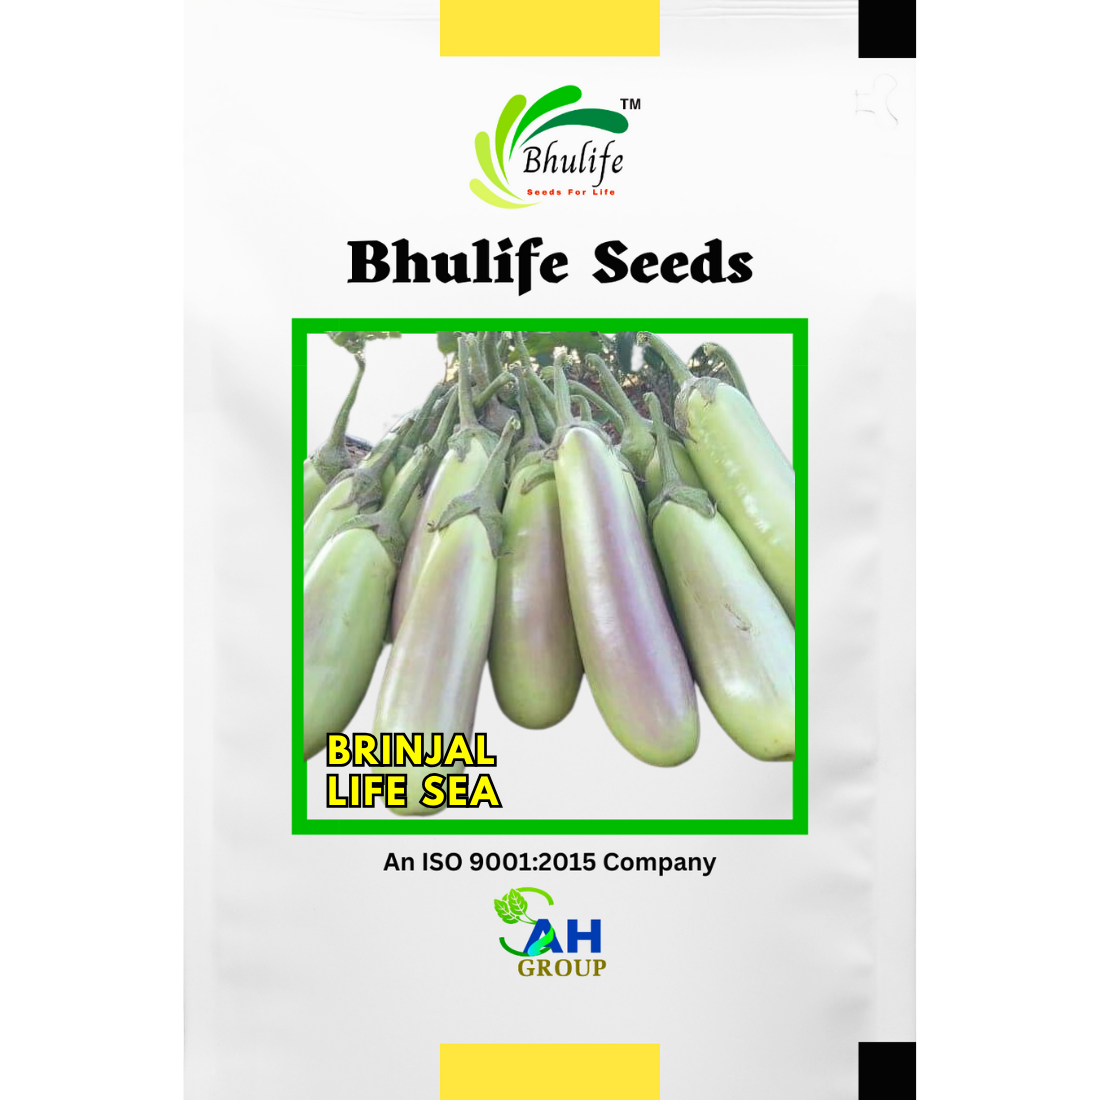 Bhulife Hybrid Brinjal Seeds Life Sea (10g)